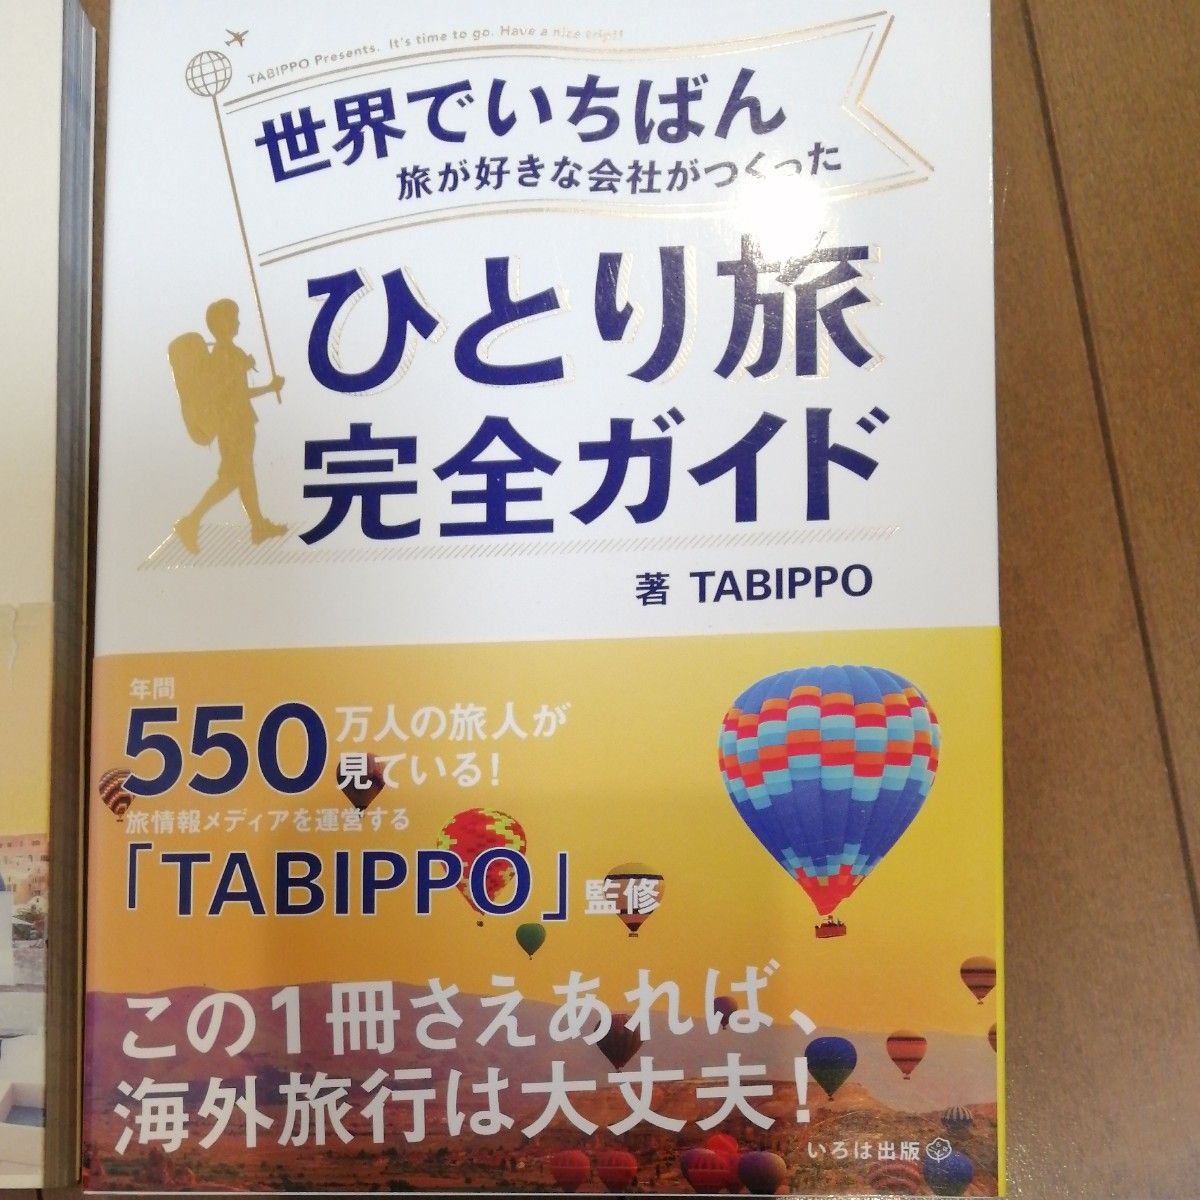 TABIPPO ひとり旅完全ガイド ひとり旅英会話BOOK 世界中を歩いた100人の旅人とつくった 世界でいちばん旅が好きな会社